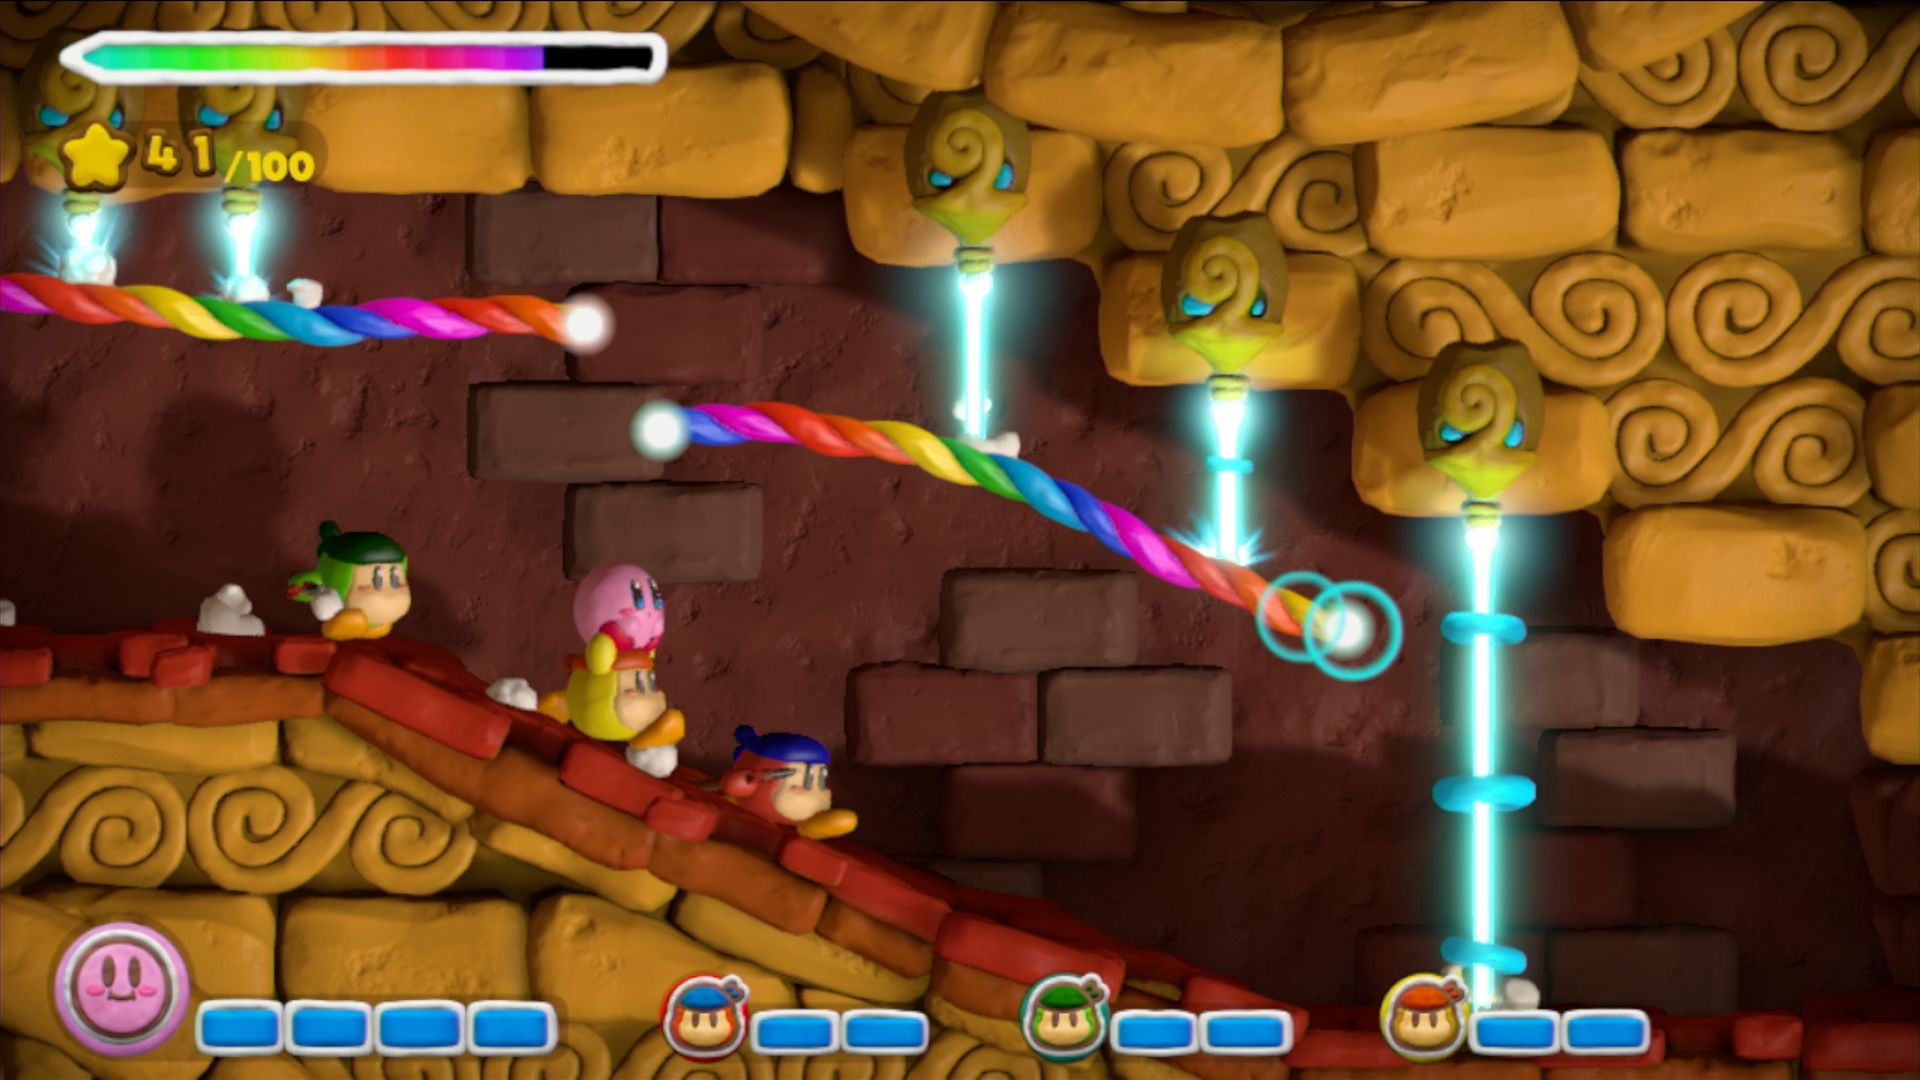 Đã đến lúc cho màn hình điện thoại của bạn trở nên đáng yêu hơn với Kirby and the Rainbow Curse HD Wallpaper! Hình ảnh Kirby trong game này được thiết kế đẹp mắt và rực rỡ với màu sắc tươi tắn. Xem hình ảnh để có trải nghiệm chân thực và thần thái!